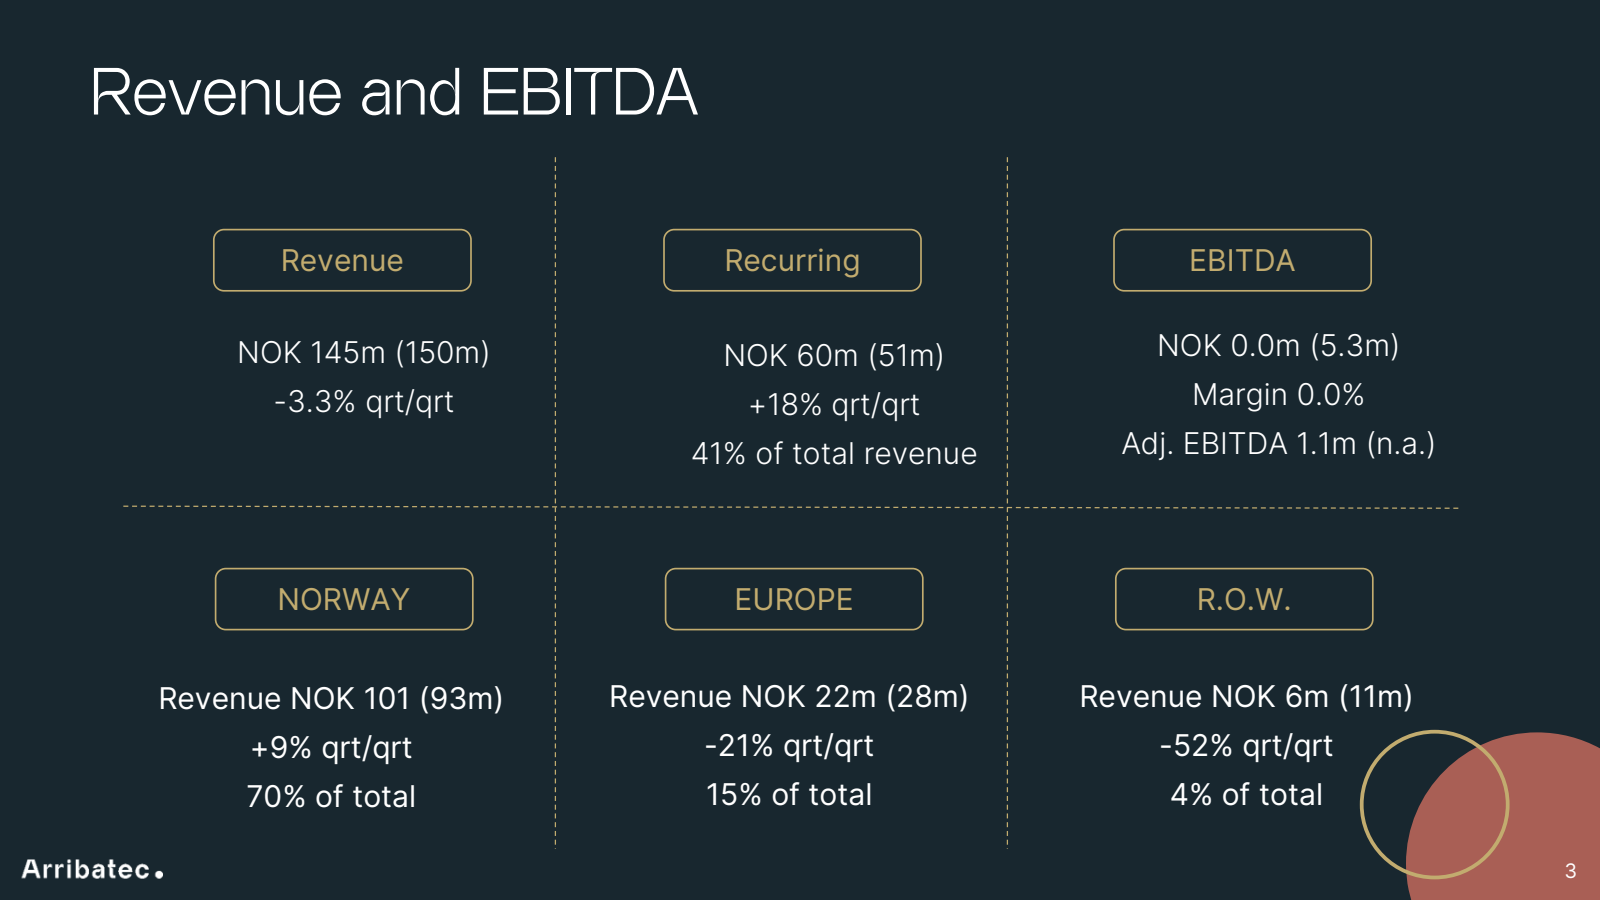 Revenue and EBITDA 
